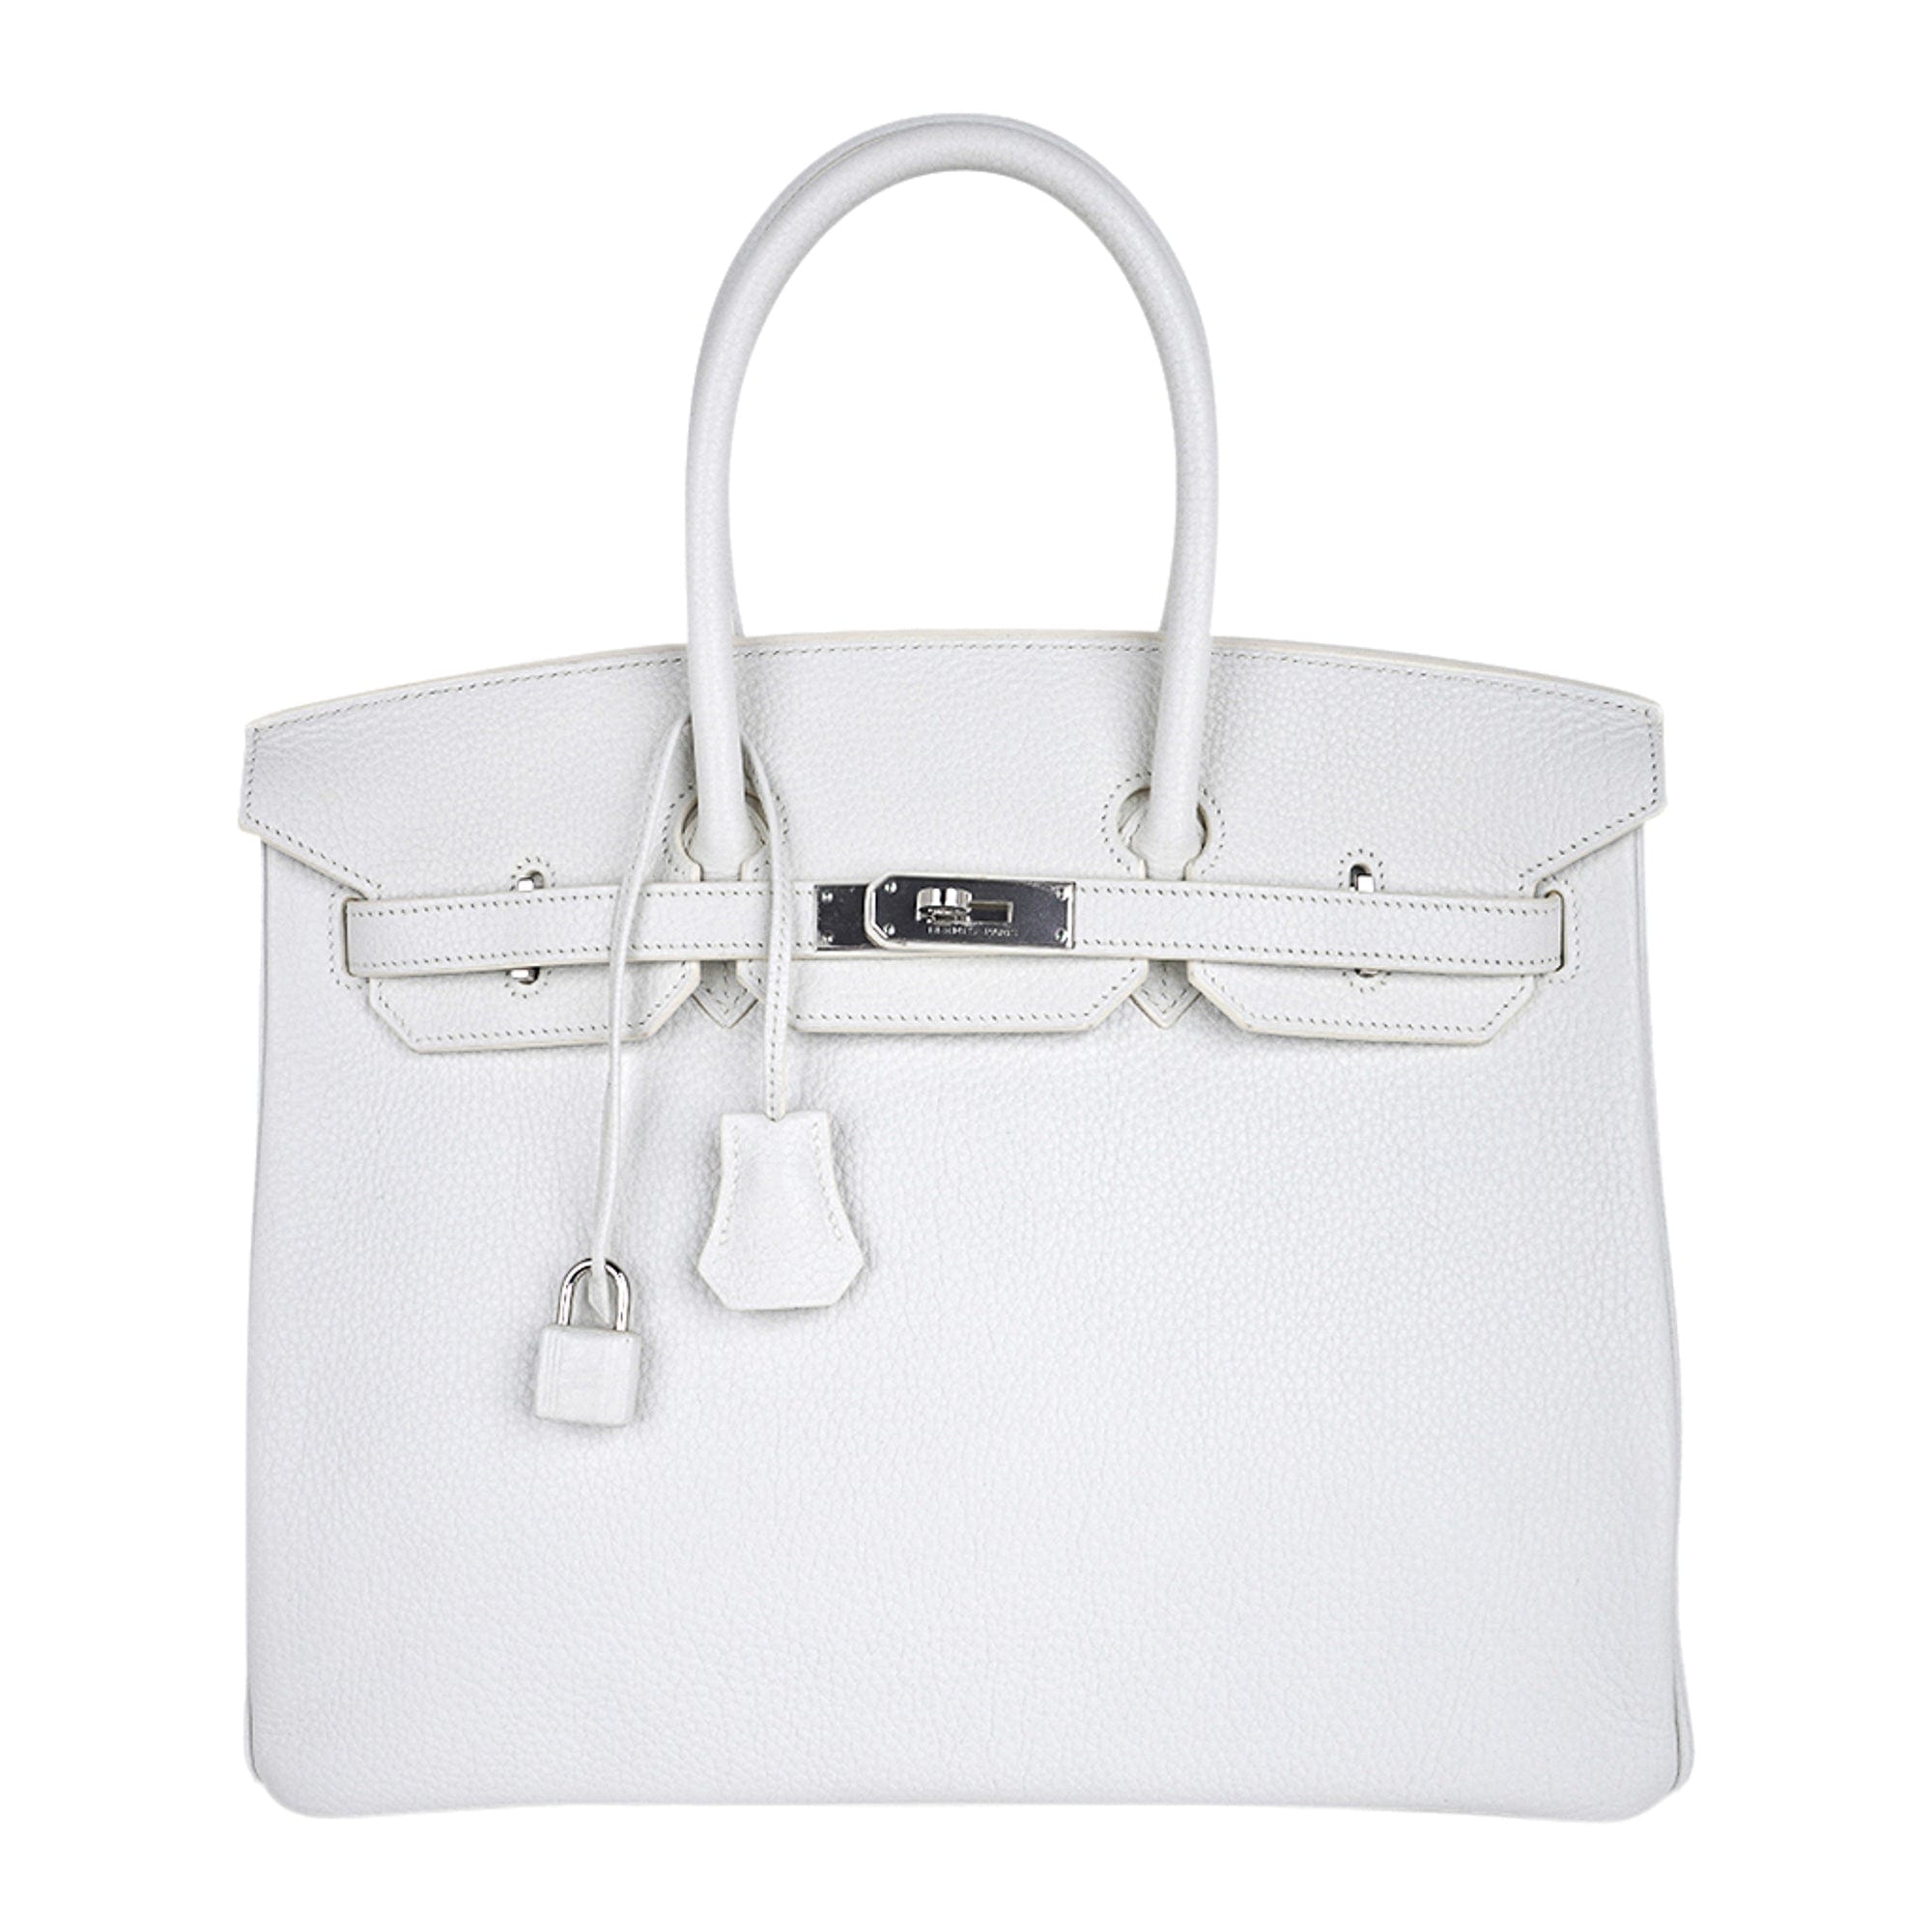 Where can I buy high-quality Hermes replica handbags? - Quora